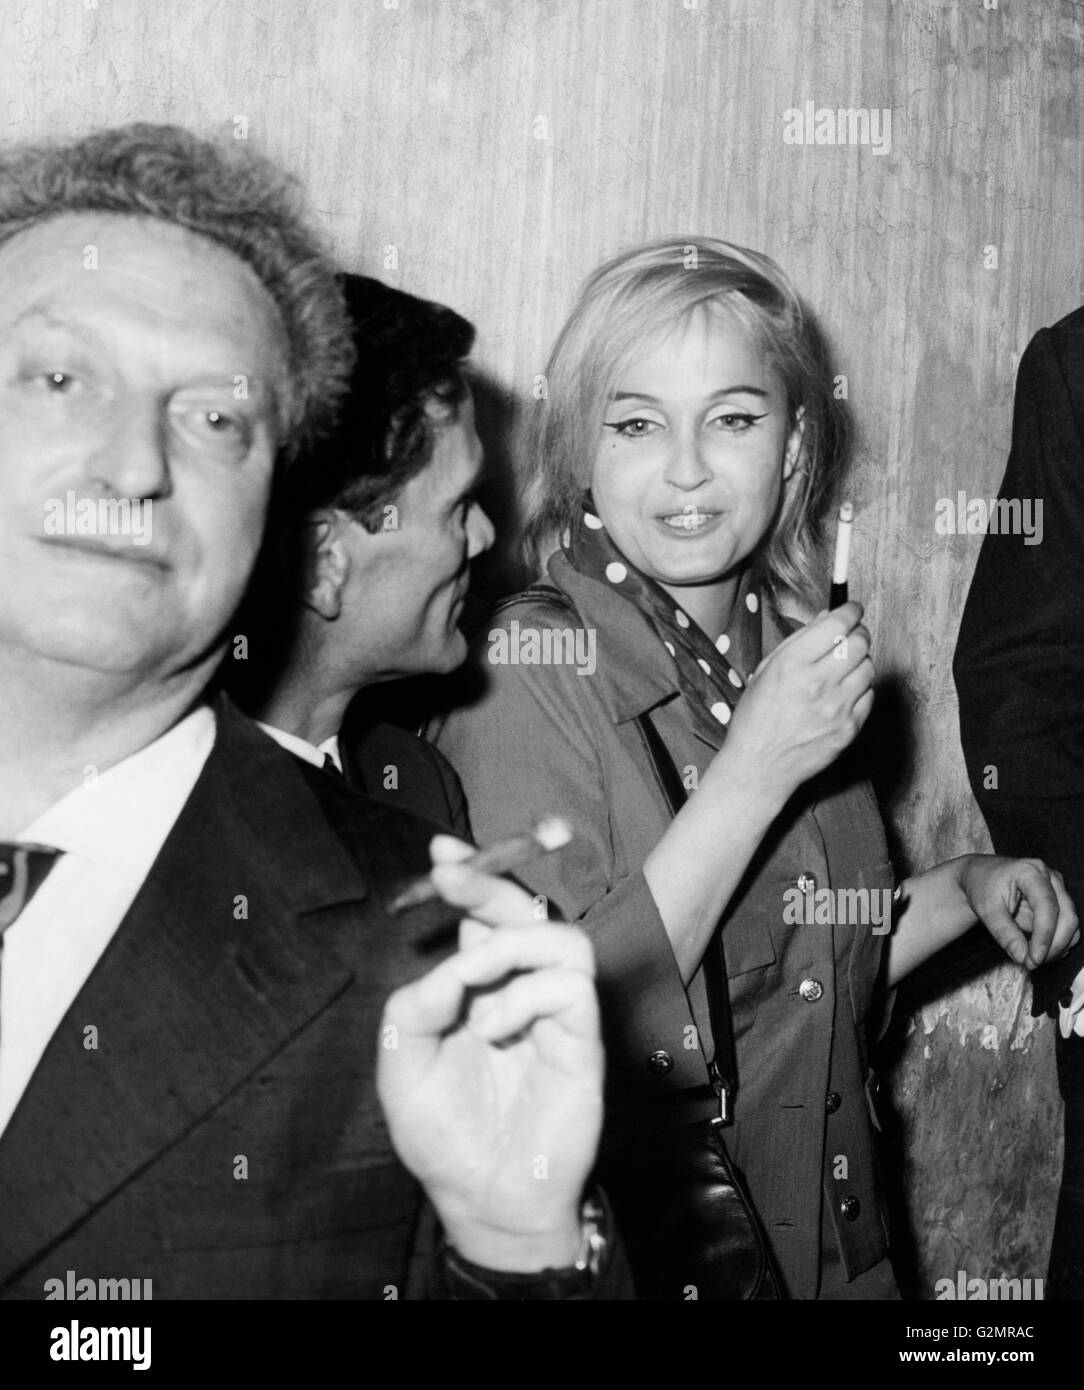 Carlo servi,Pier Paolo Pasolini et Laura Betti,premio strega,Rome 1961 Banque D'Images